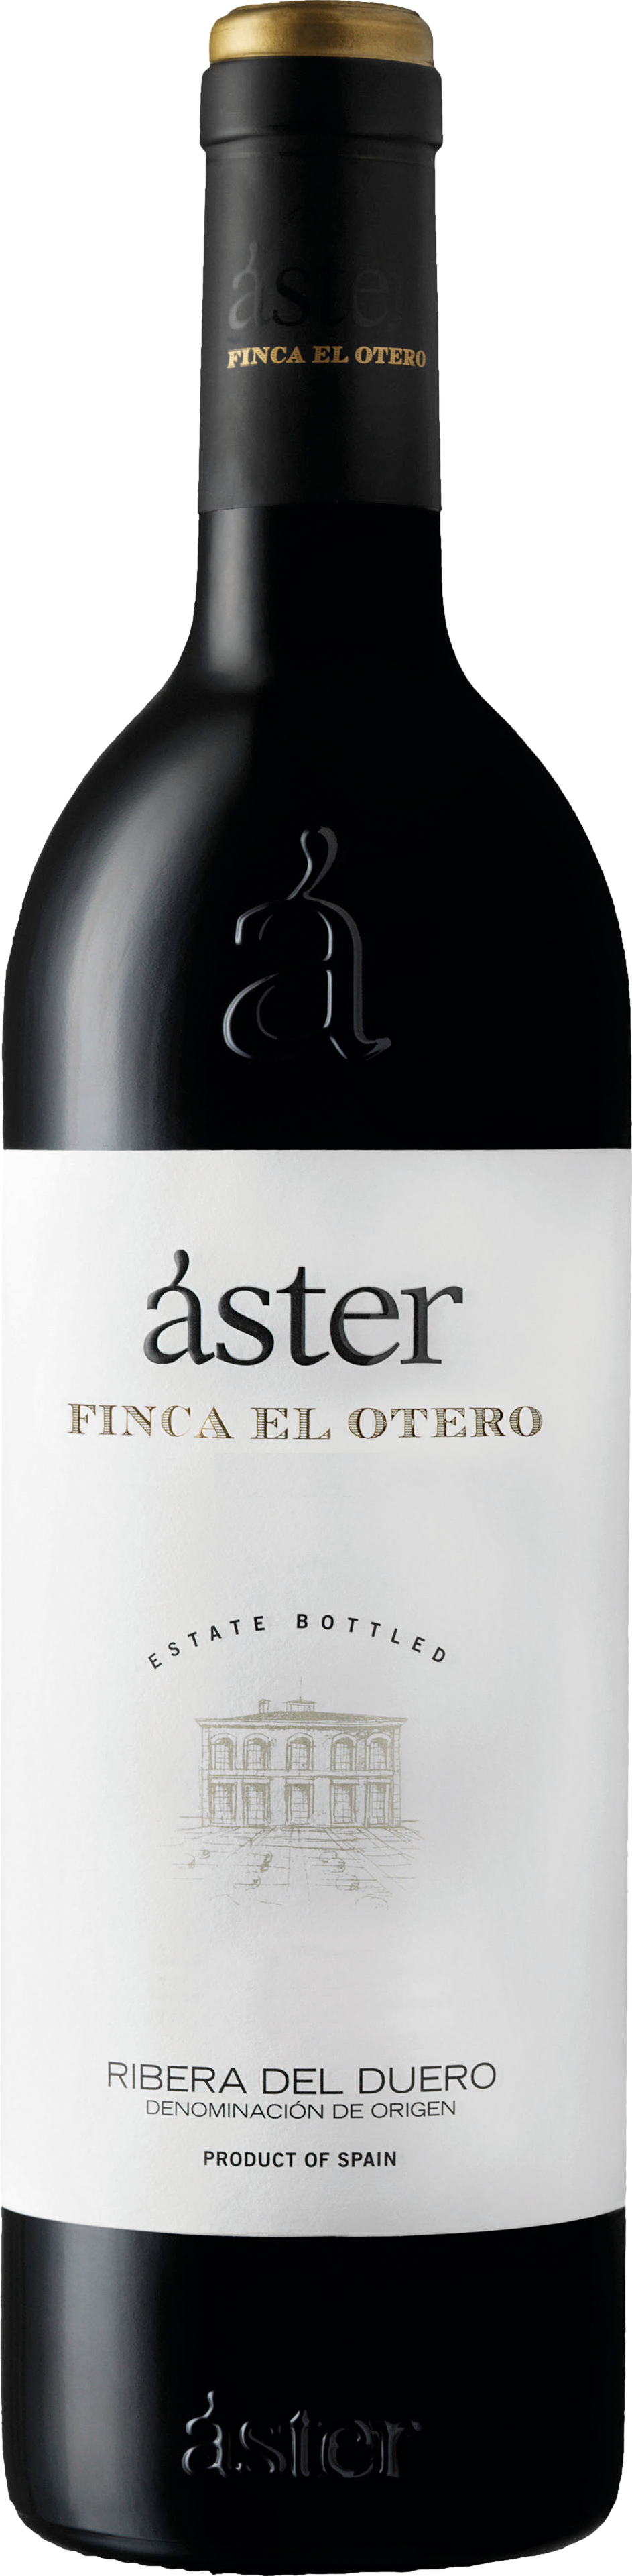 Aster Finca El Otero 2019